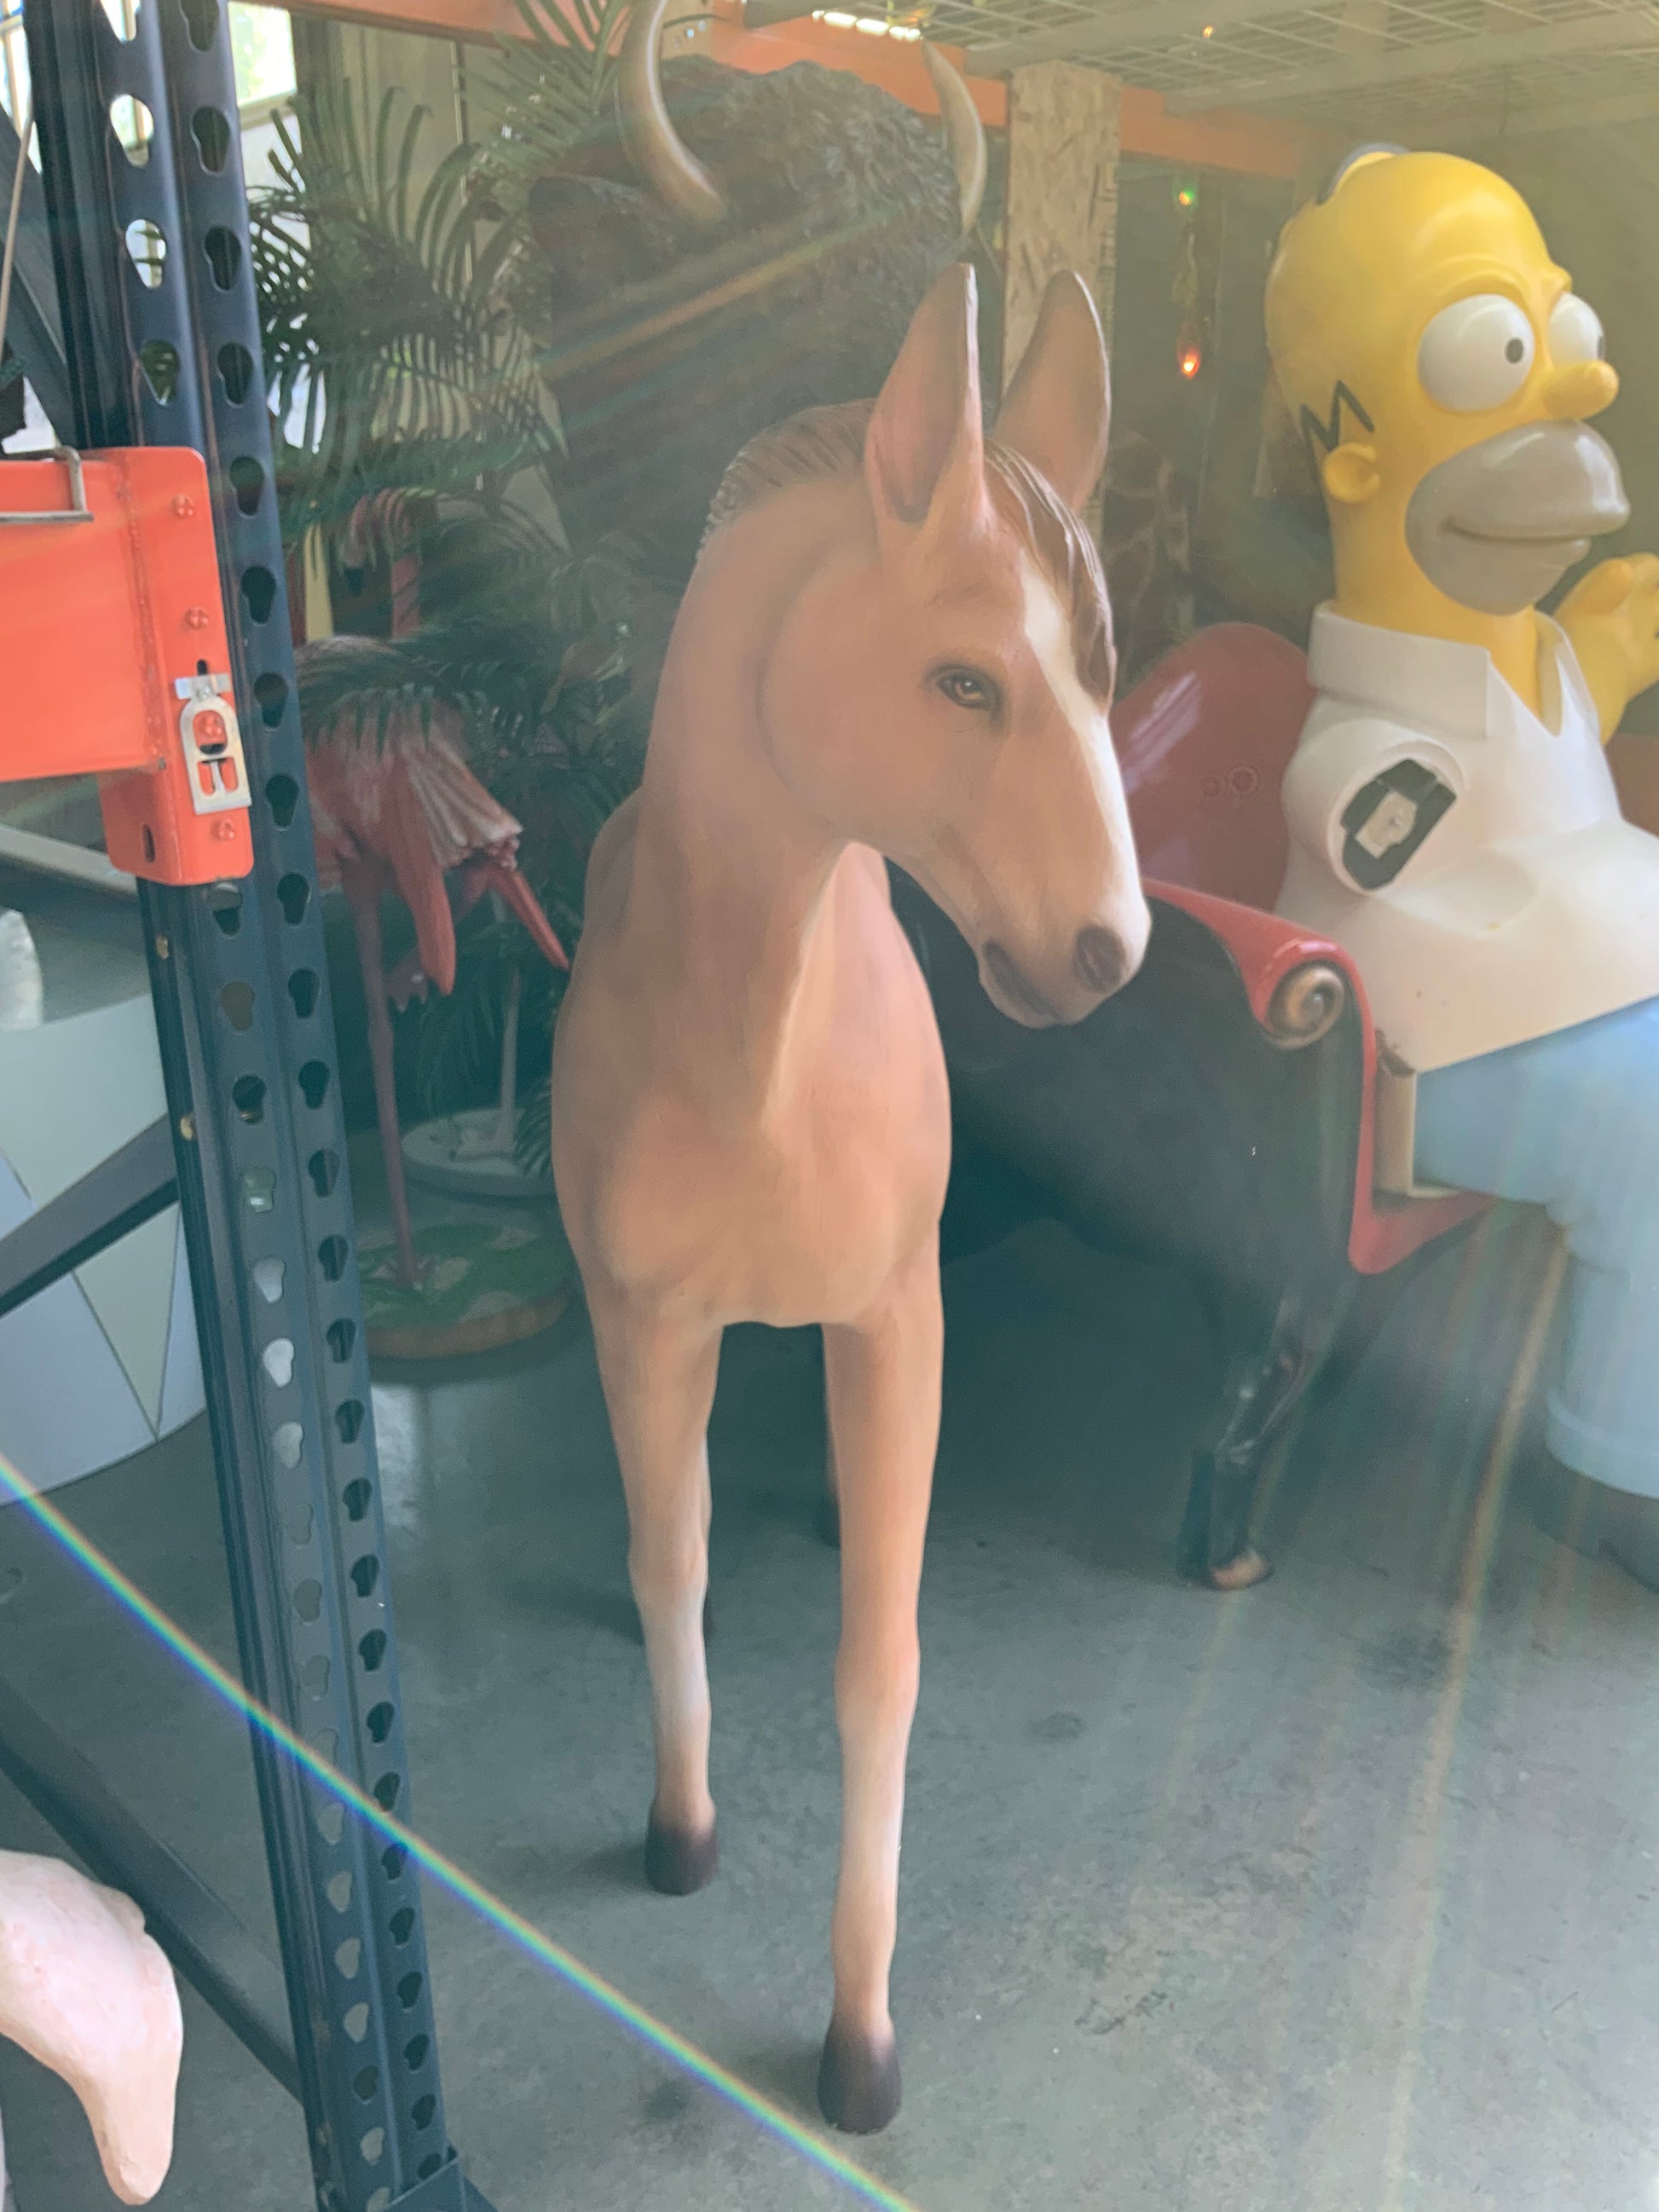 Baby Foal Pony Horse Walking Statue - LM Treasures Prop Rentals 